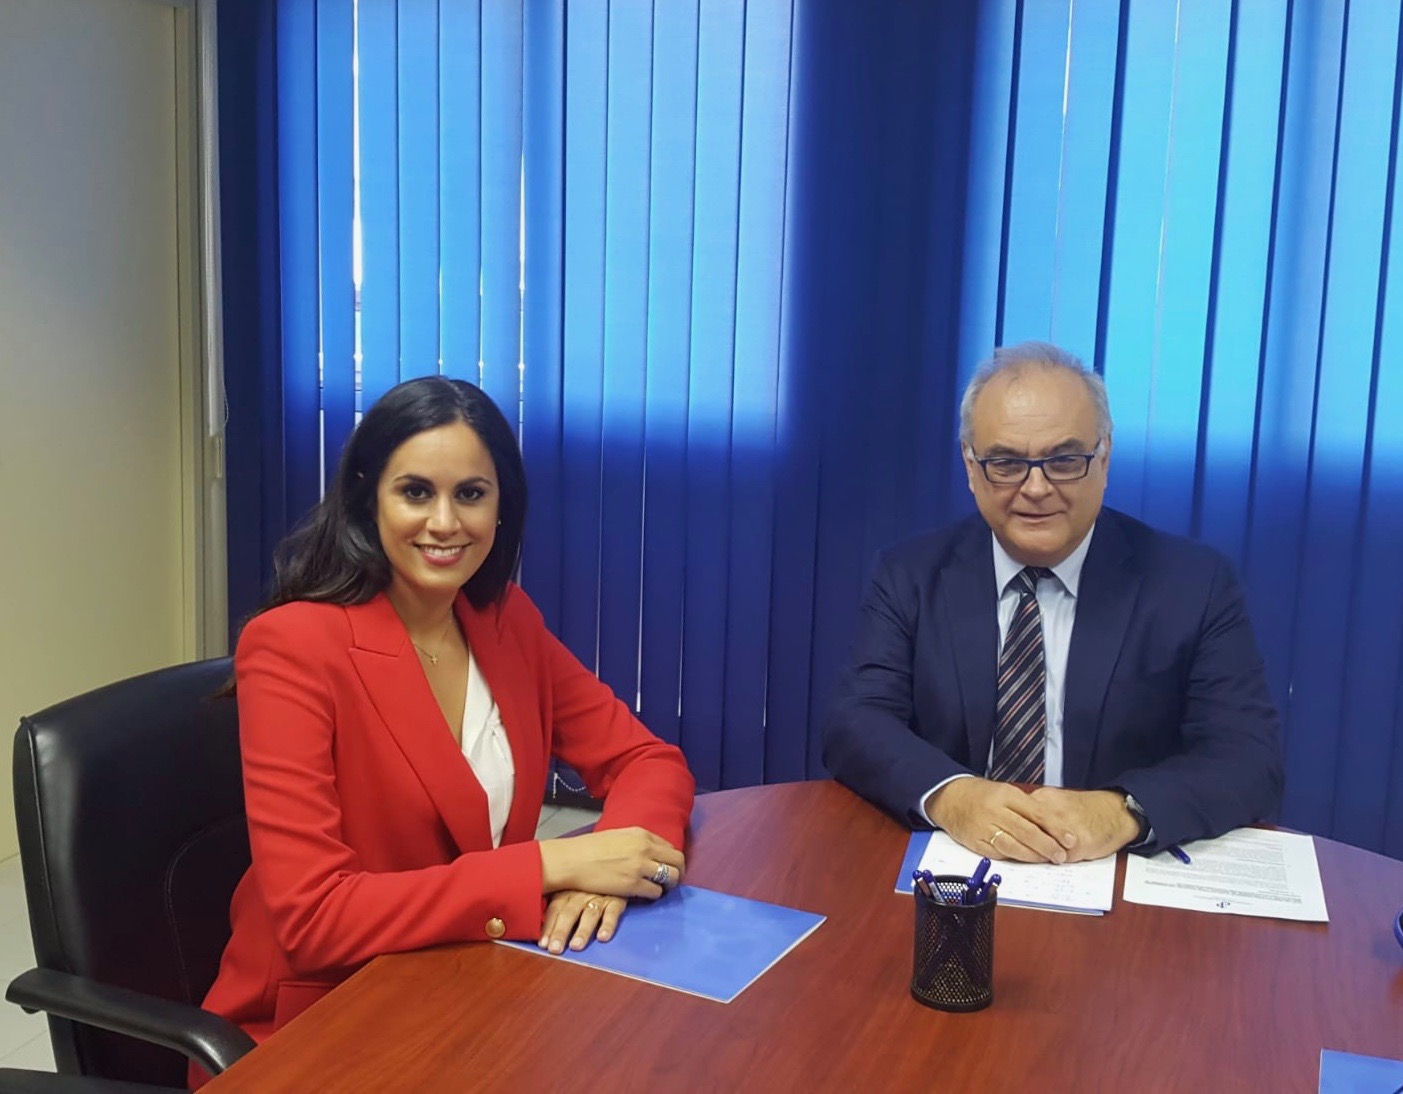 Imagen de la reunión mantenida entre Francisco Cabrera Panasco y la candidata a la Presidencia del Gobierno de Canarias por Ciudadanos, Vidina Espino.jpeg